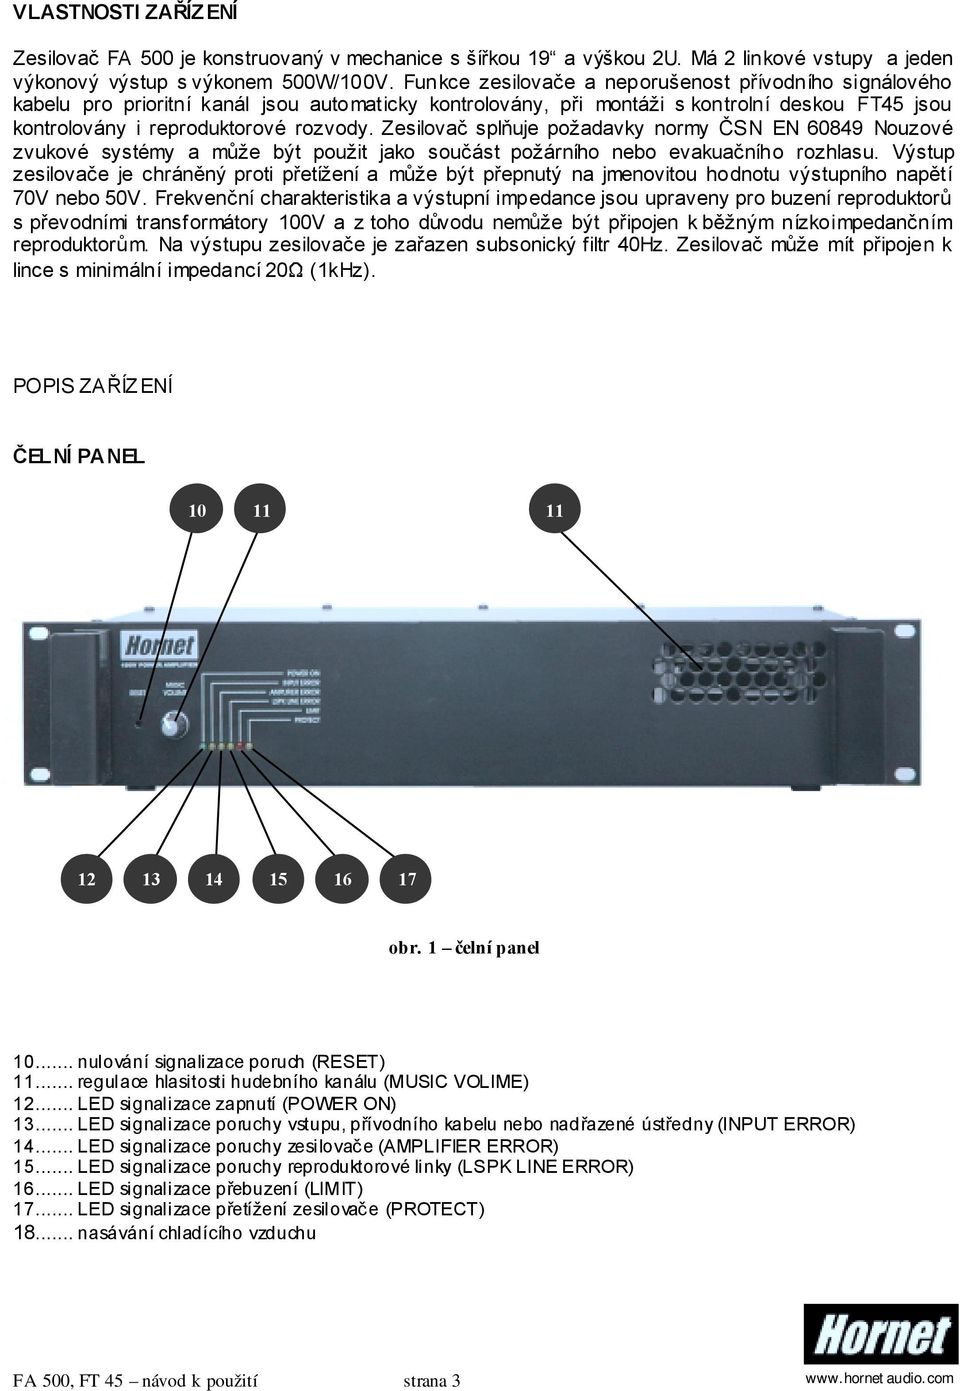 Zesilovač splňuje požadavky normy ČSN EN 60849 Nouzové zvukové systémy a může být použit jako součást požárního nebo evakuačního rozhlasu.